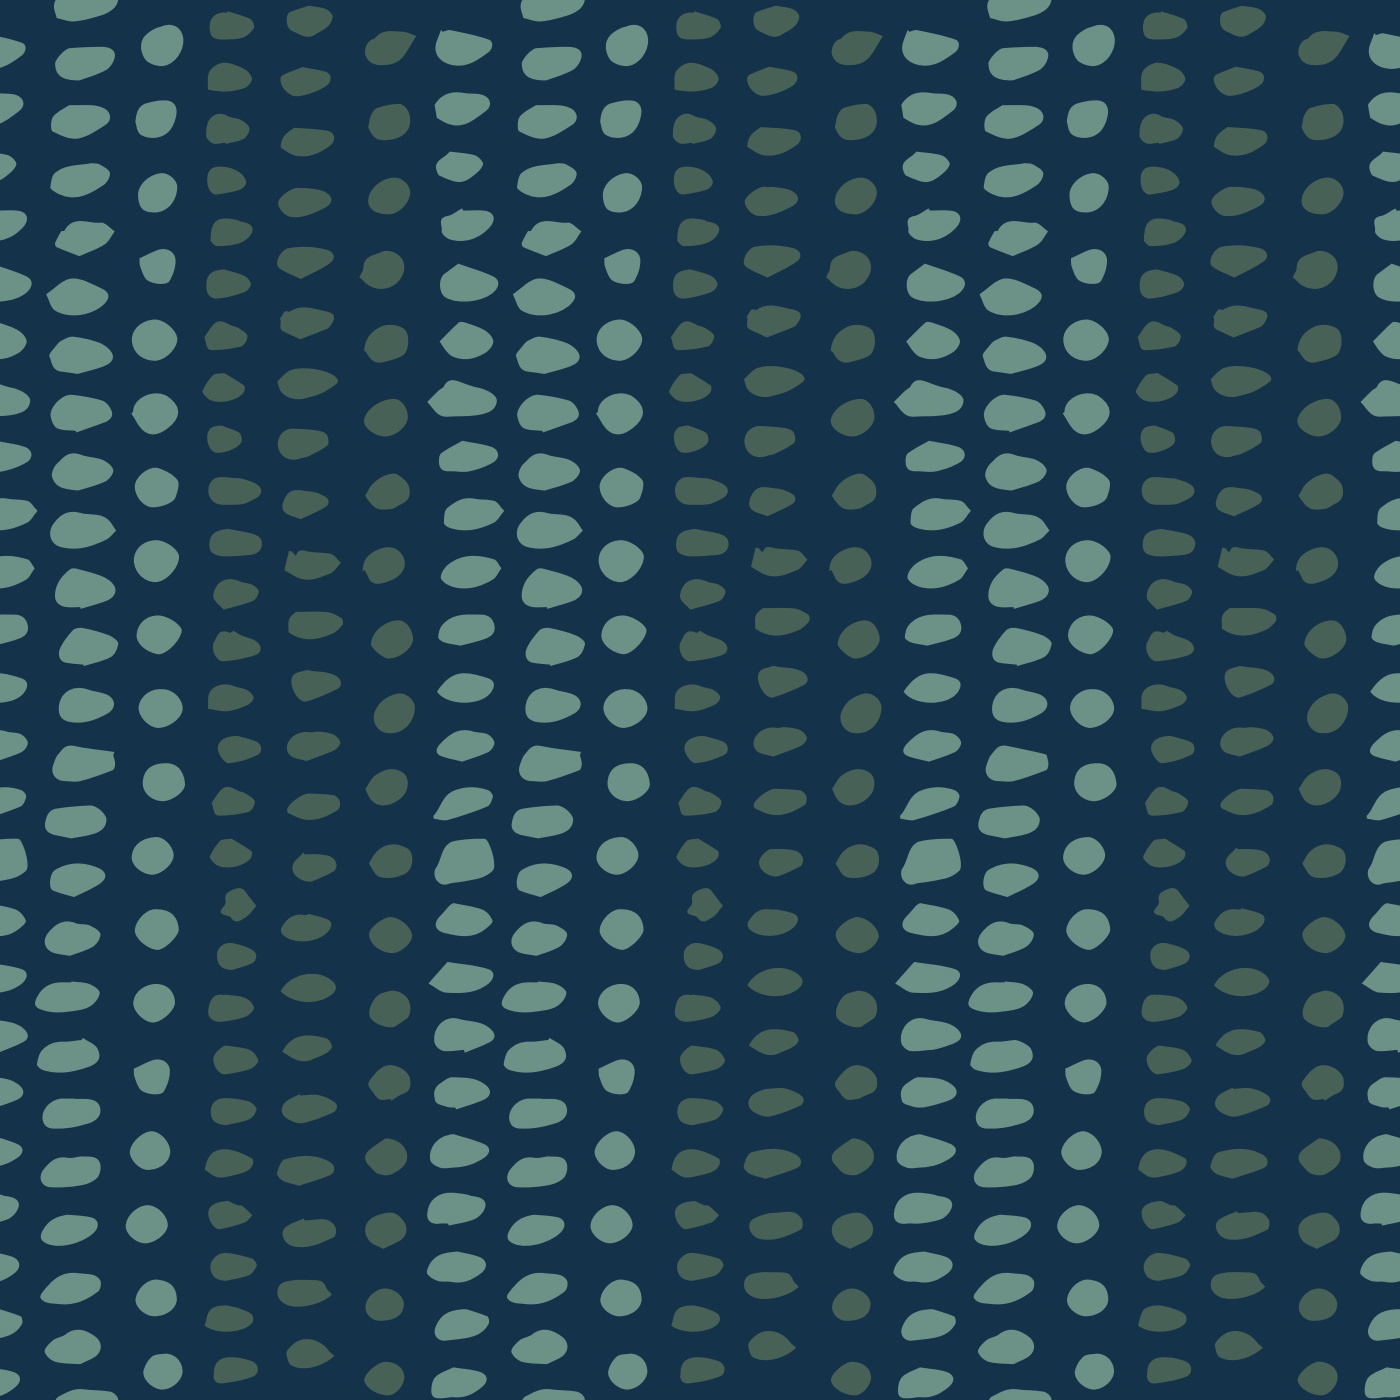 Striped Sea Glass Wallpaper